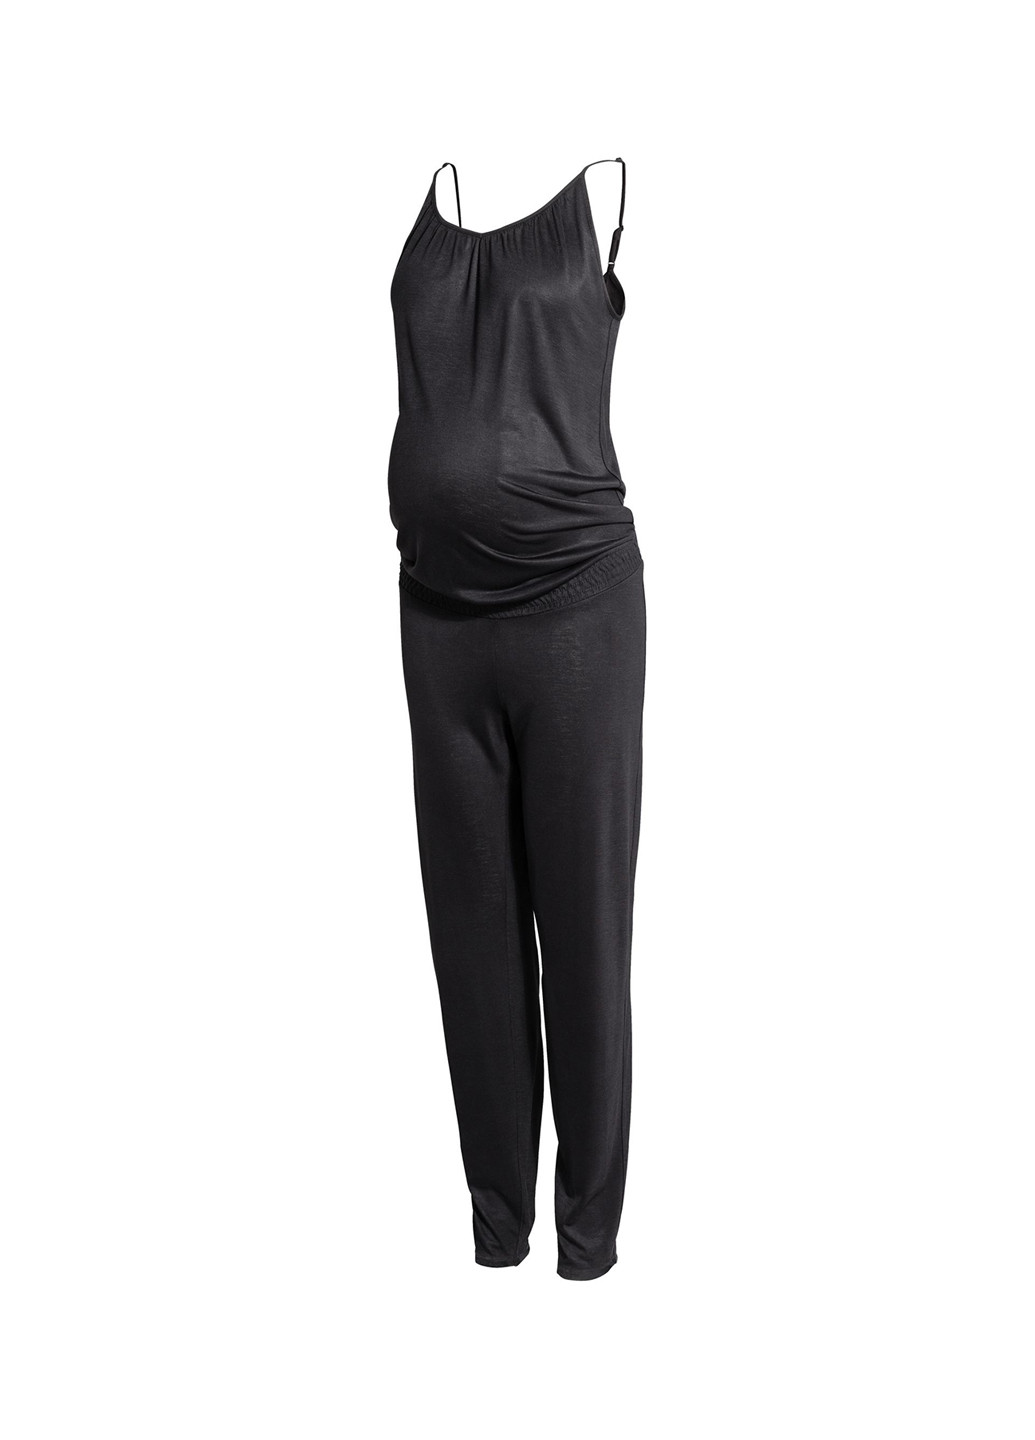 Комбинезон для беременных H&M комбинезон-брюки однотонный чёрный кэжуал вискоза